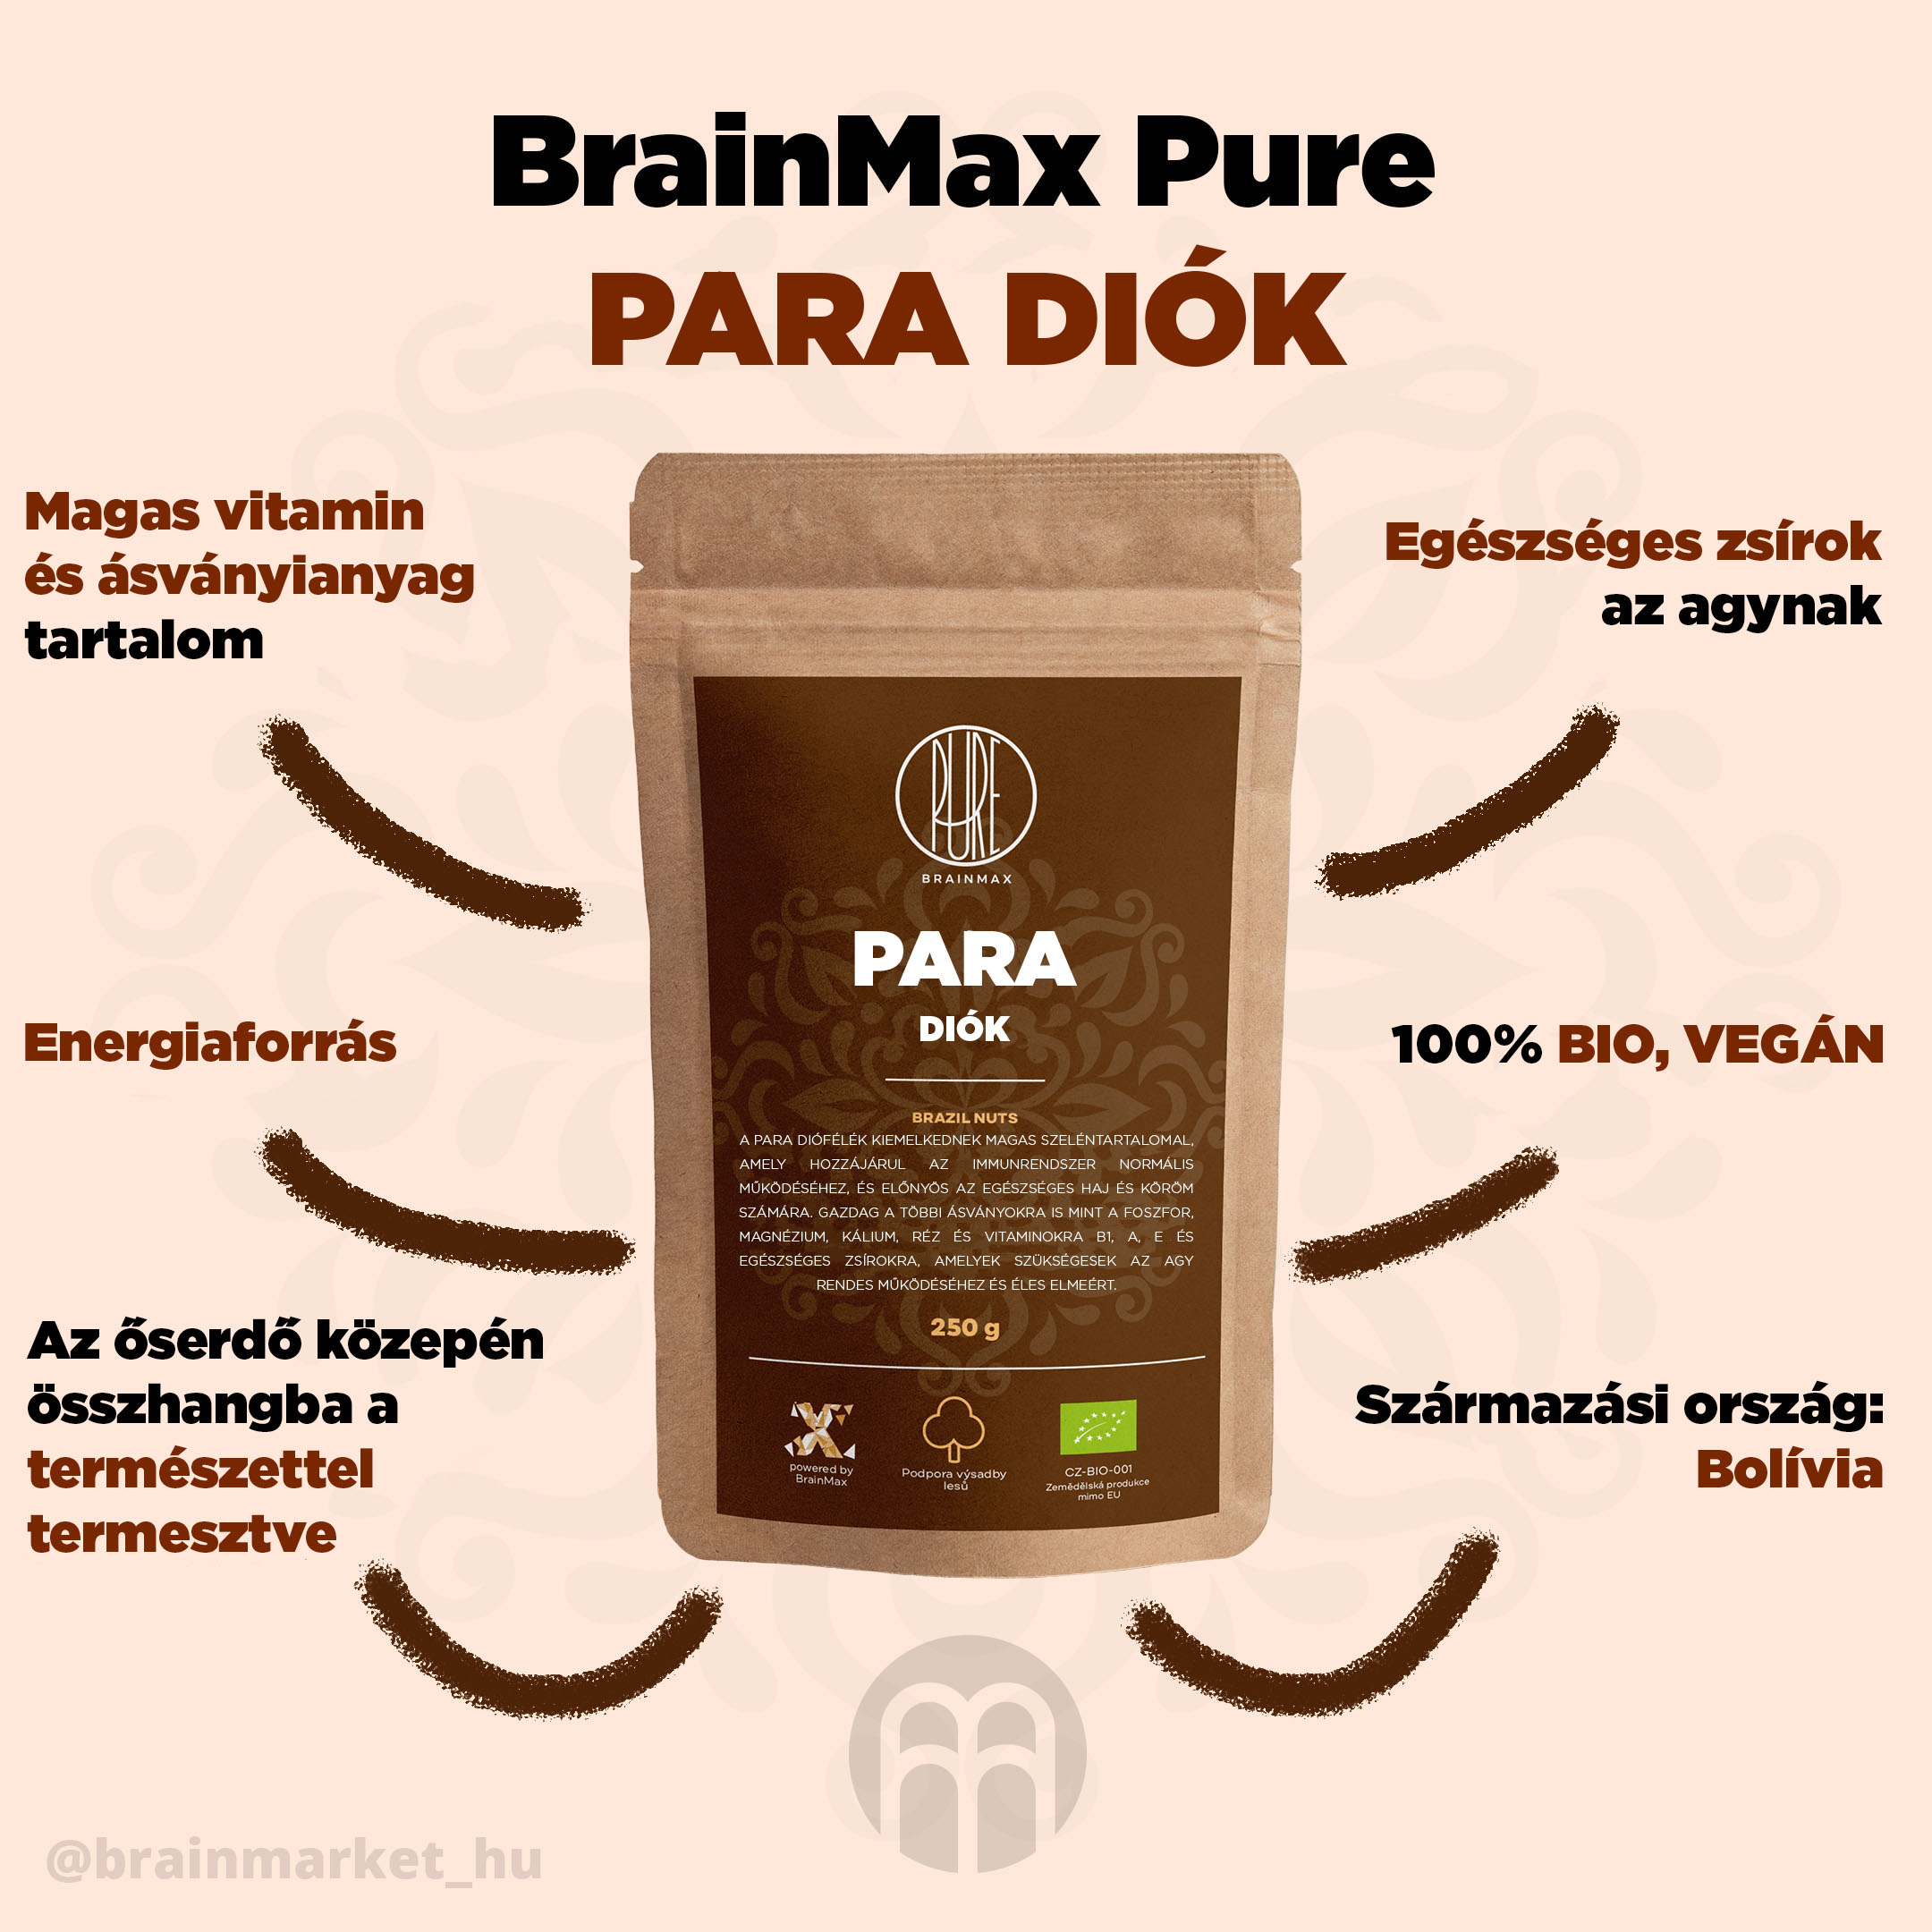 BrainMax Pure Para diófélék - BrainMarket.cz